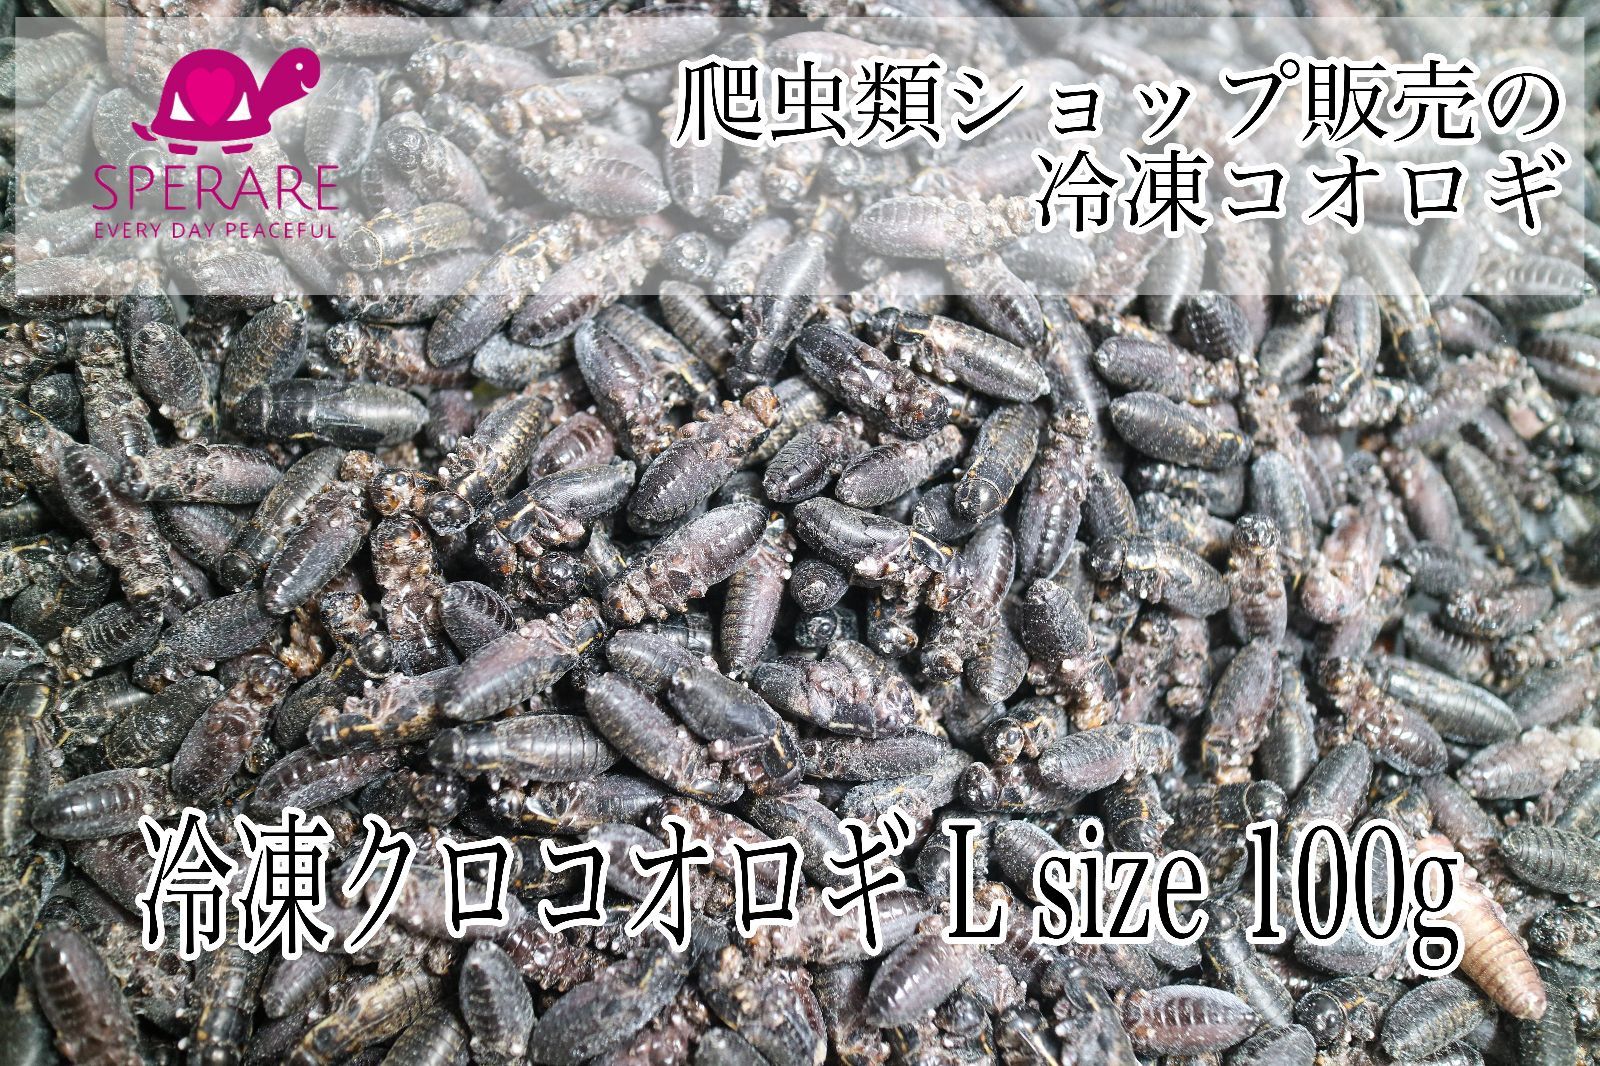 冷凍コオロギ 100g セール品 - 爬虫類・両生類のエサ